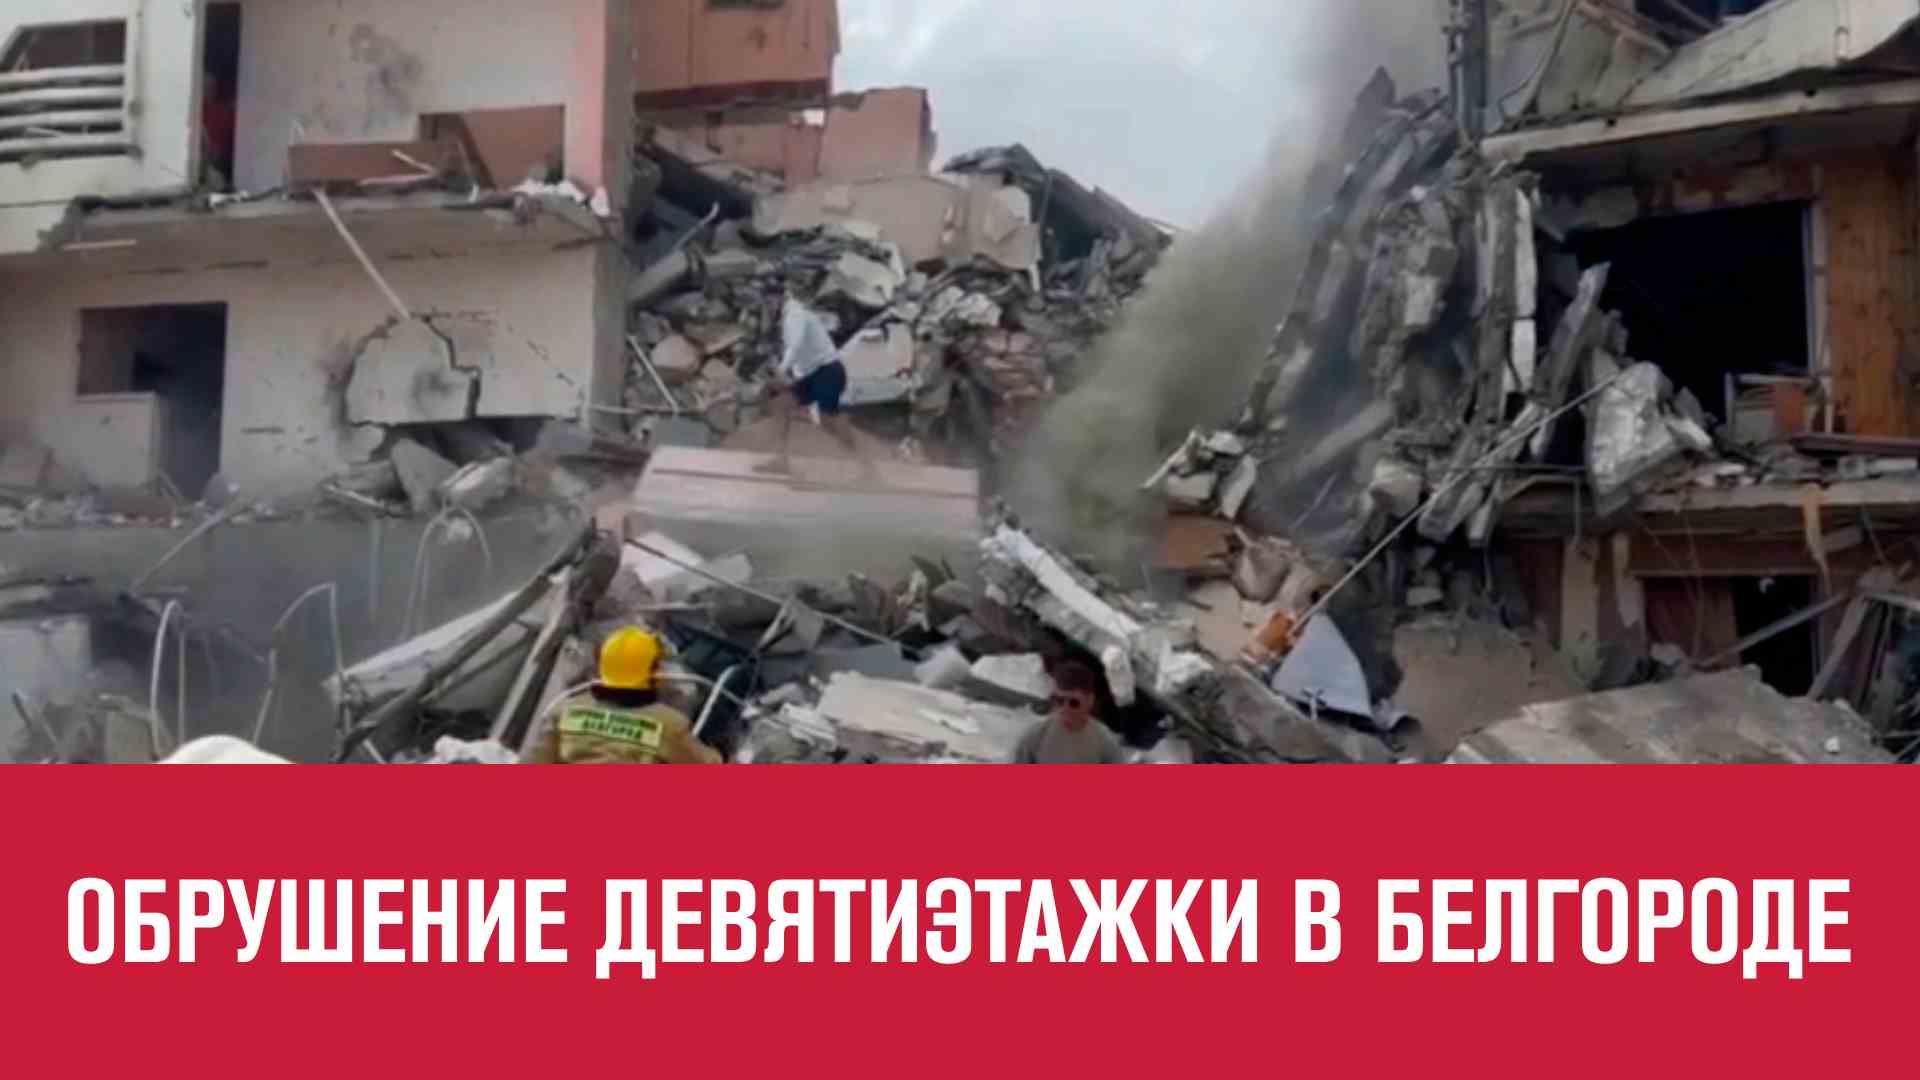 Подъезд жилого дома рухнул при обстреле в Белгороде - Москва FM